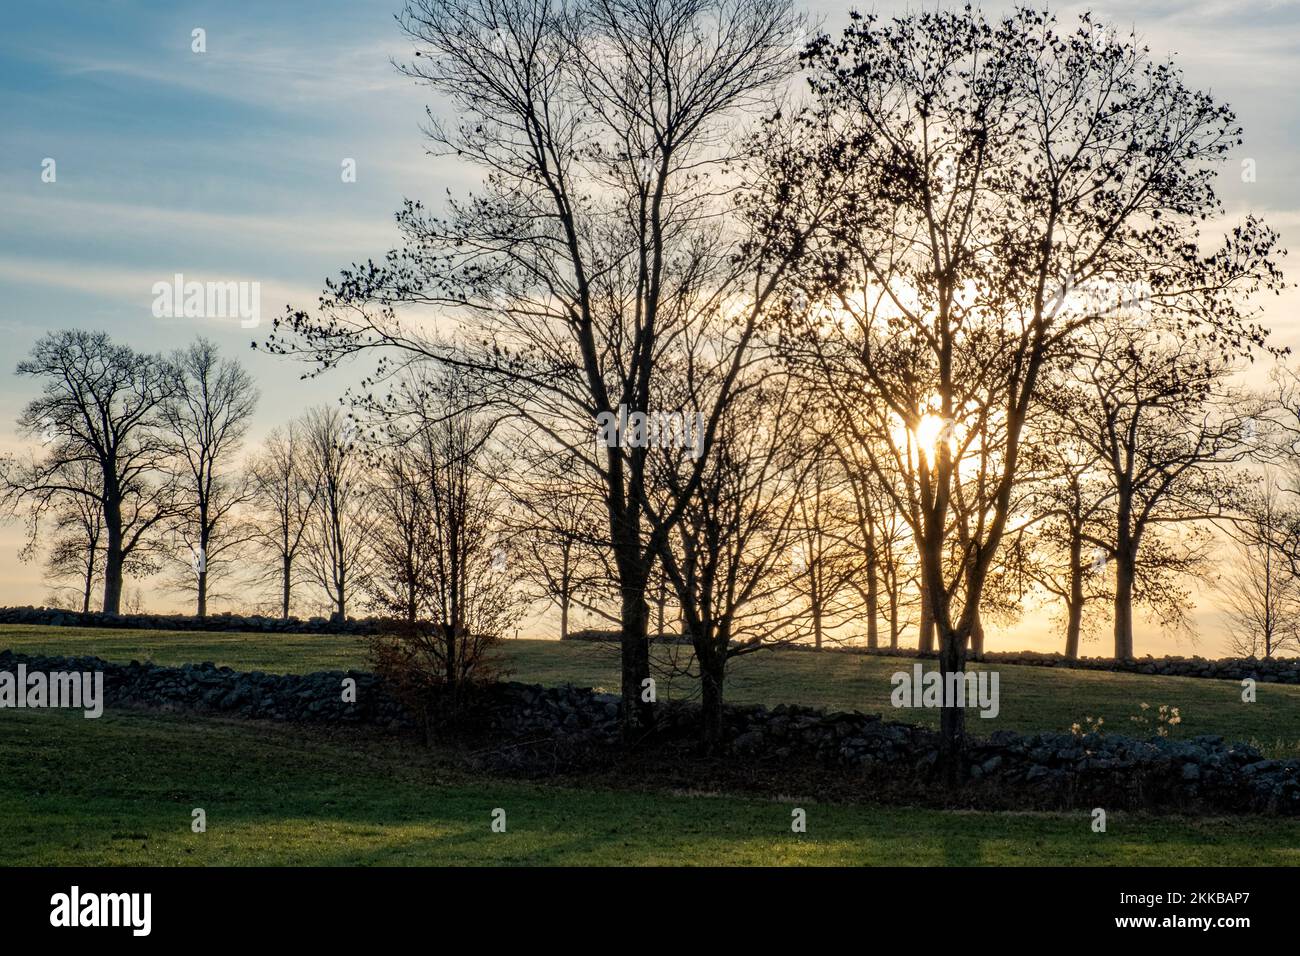 Sunset over a pasture in Hardwick, Massachusetts Stock Photo